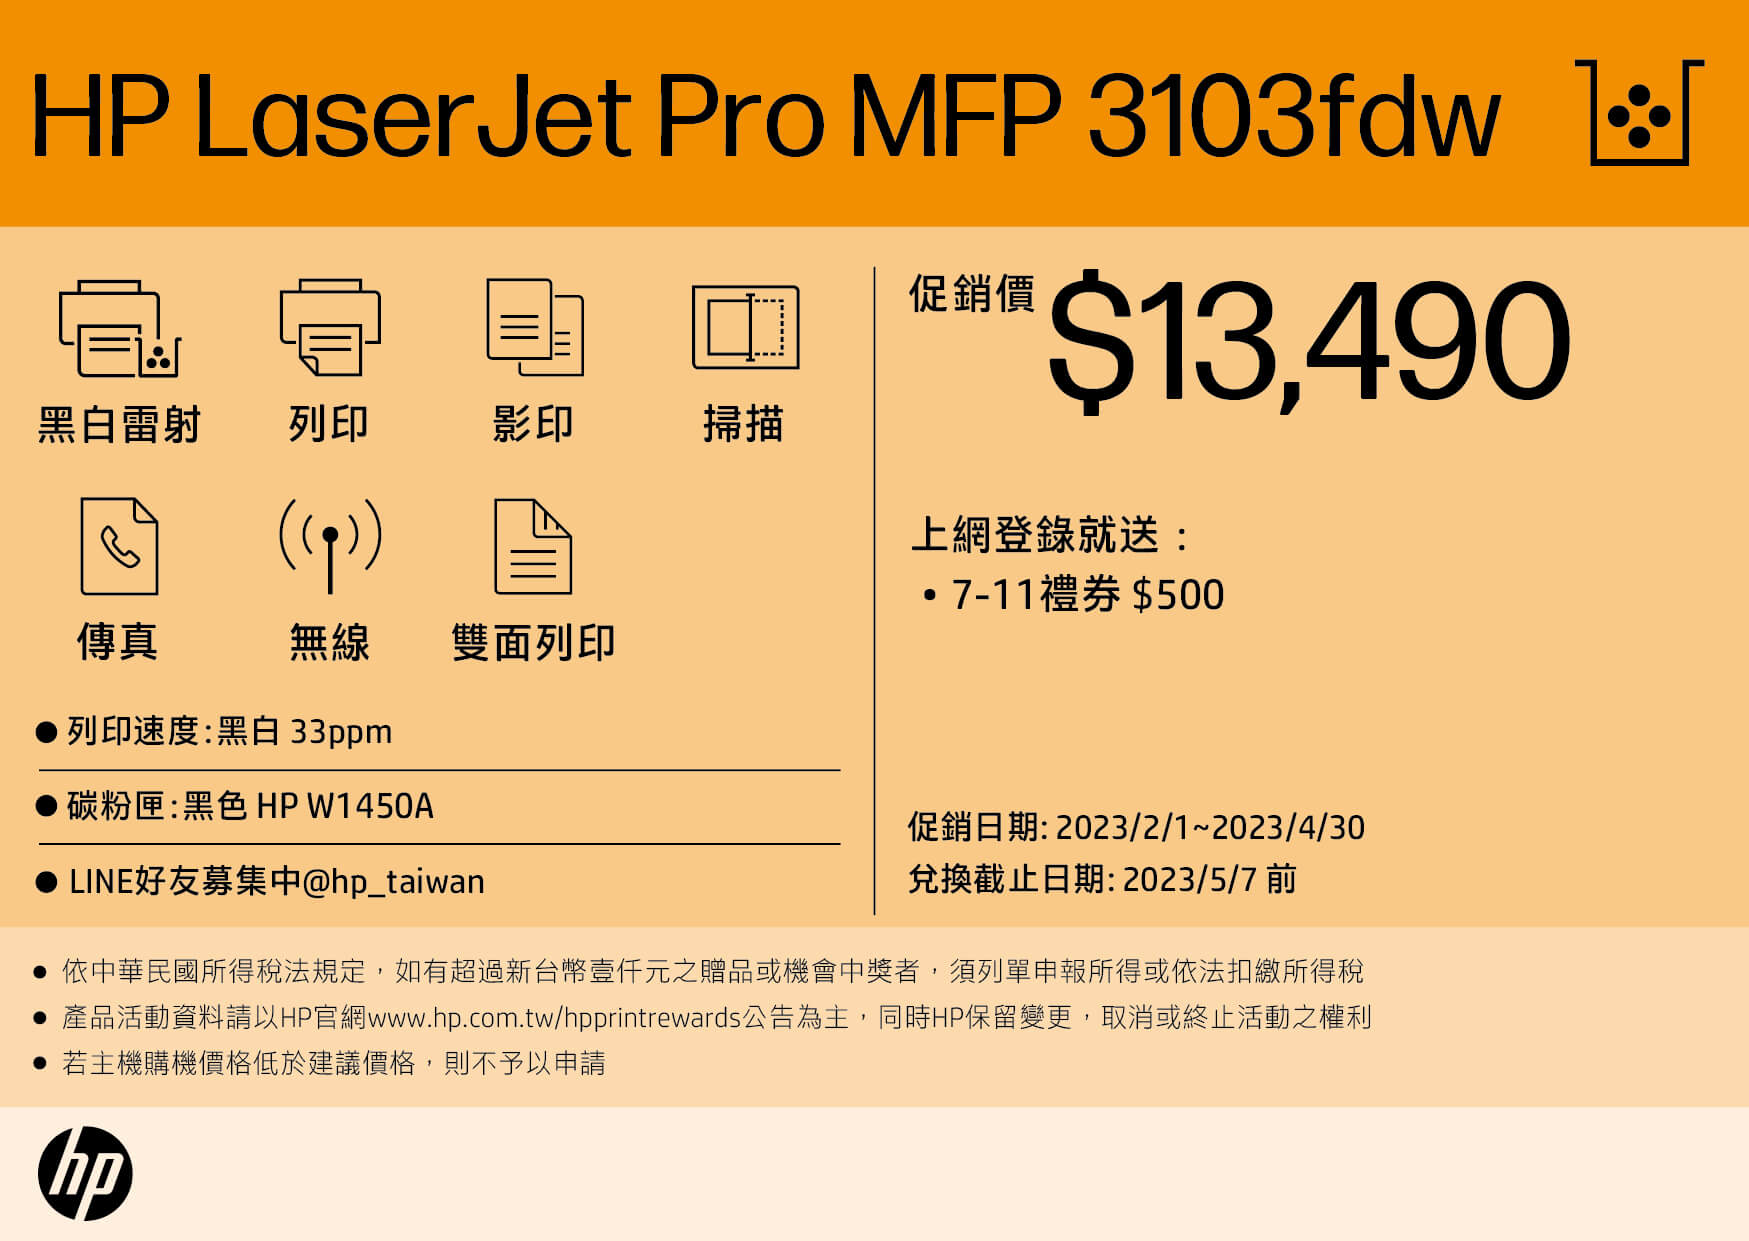 HP Laserjet Pro MFP 3103fdw